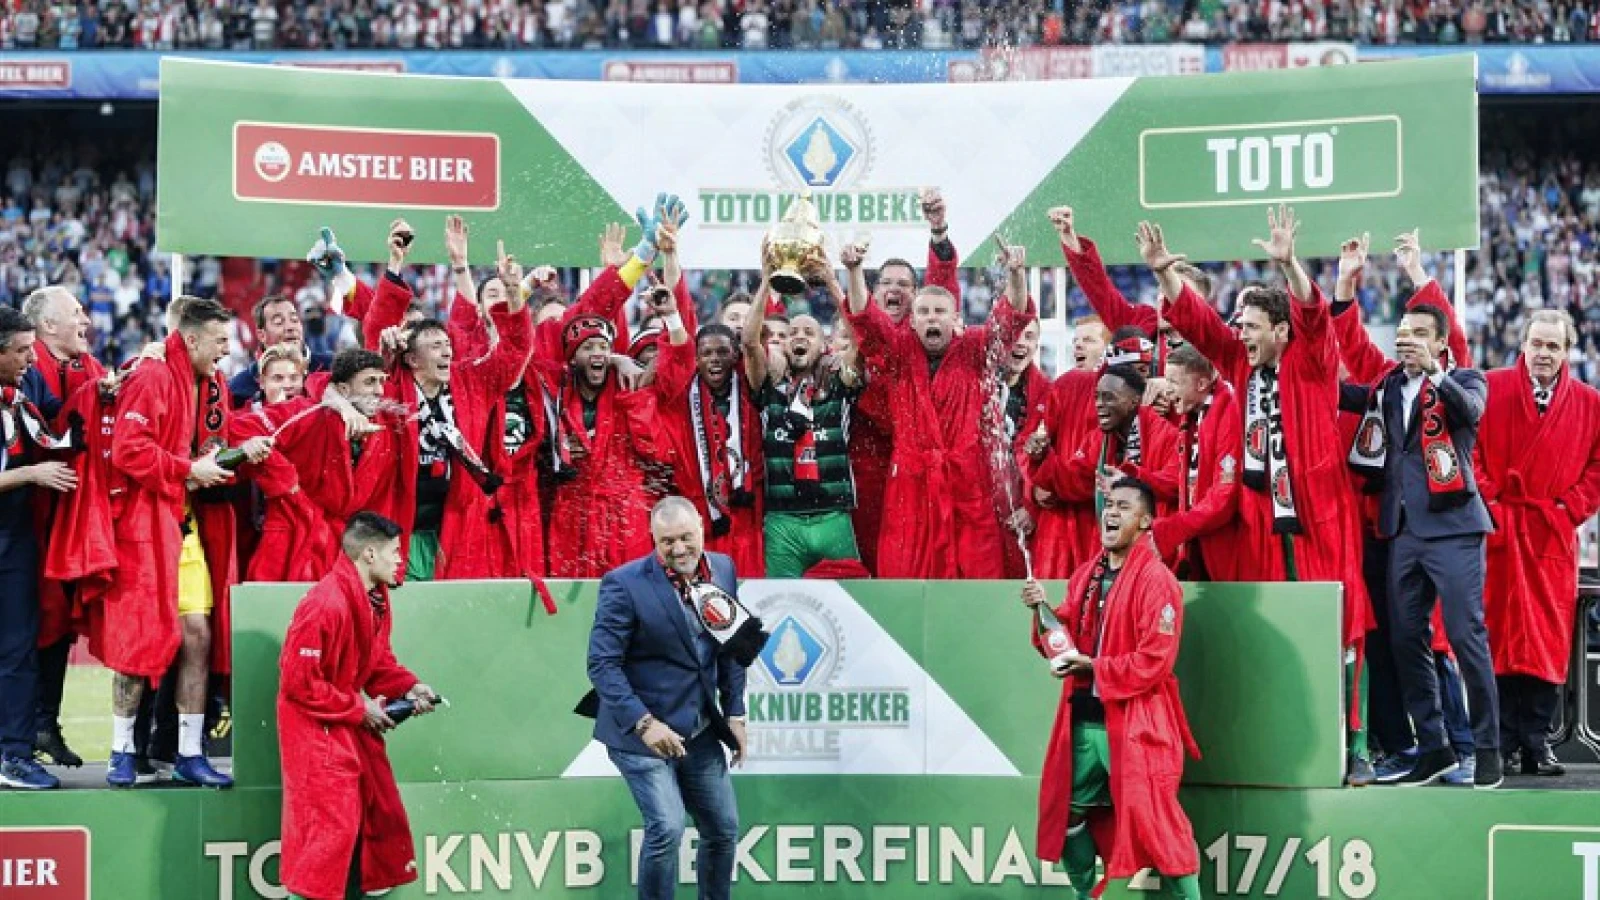 Feyenoord zendt vanaf 18:00 bekerfinale 2018 uit